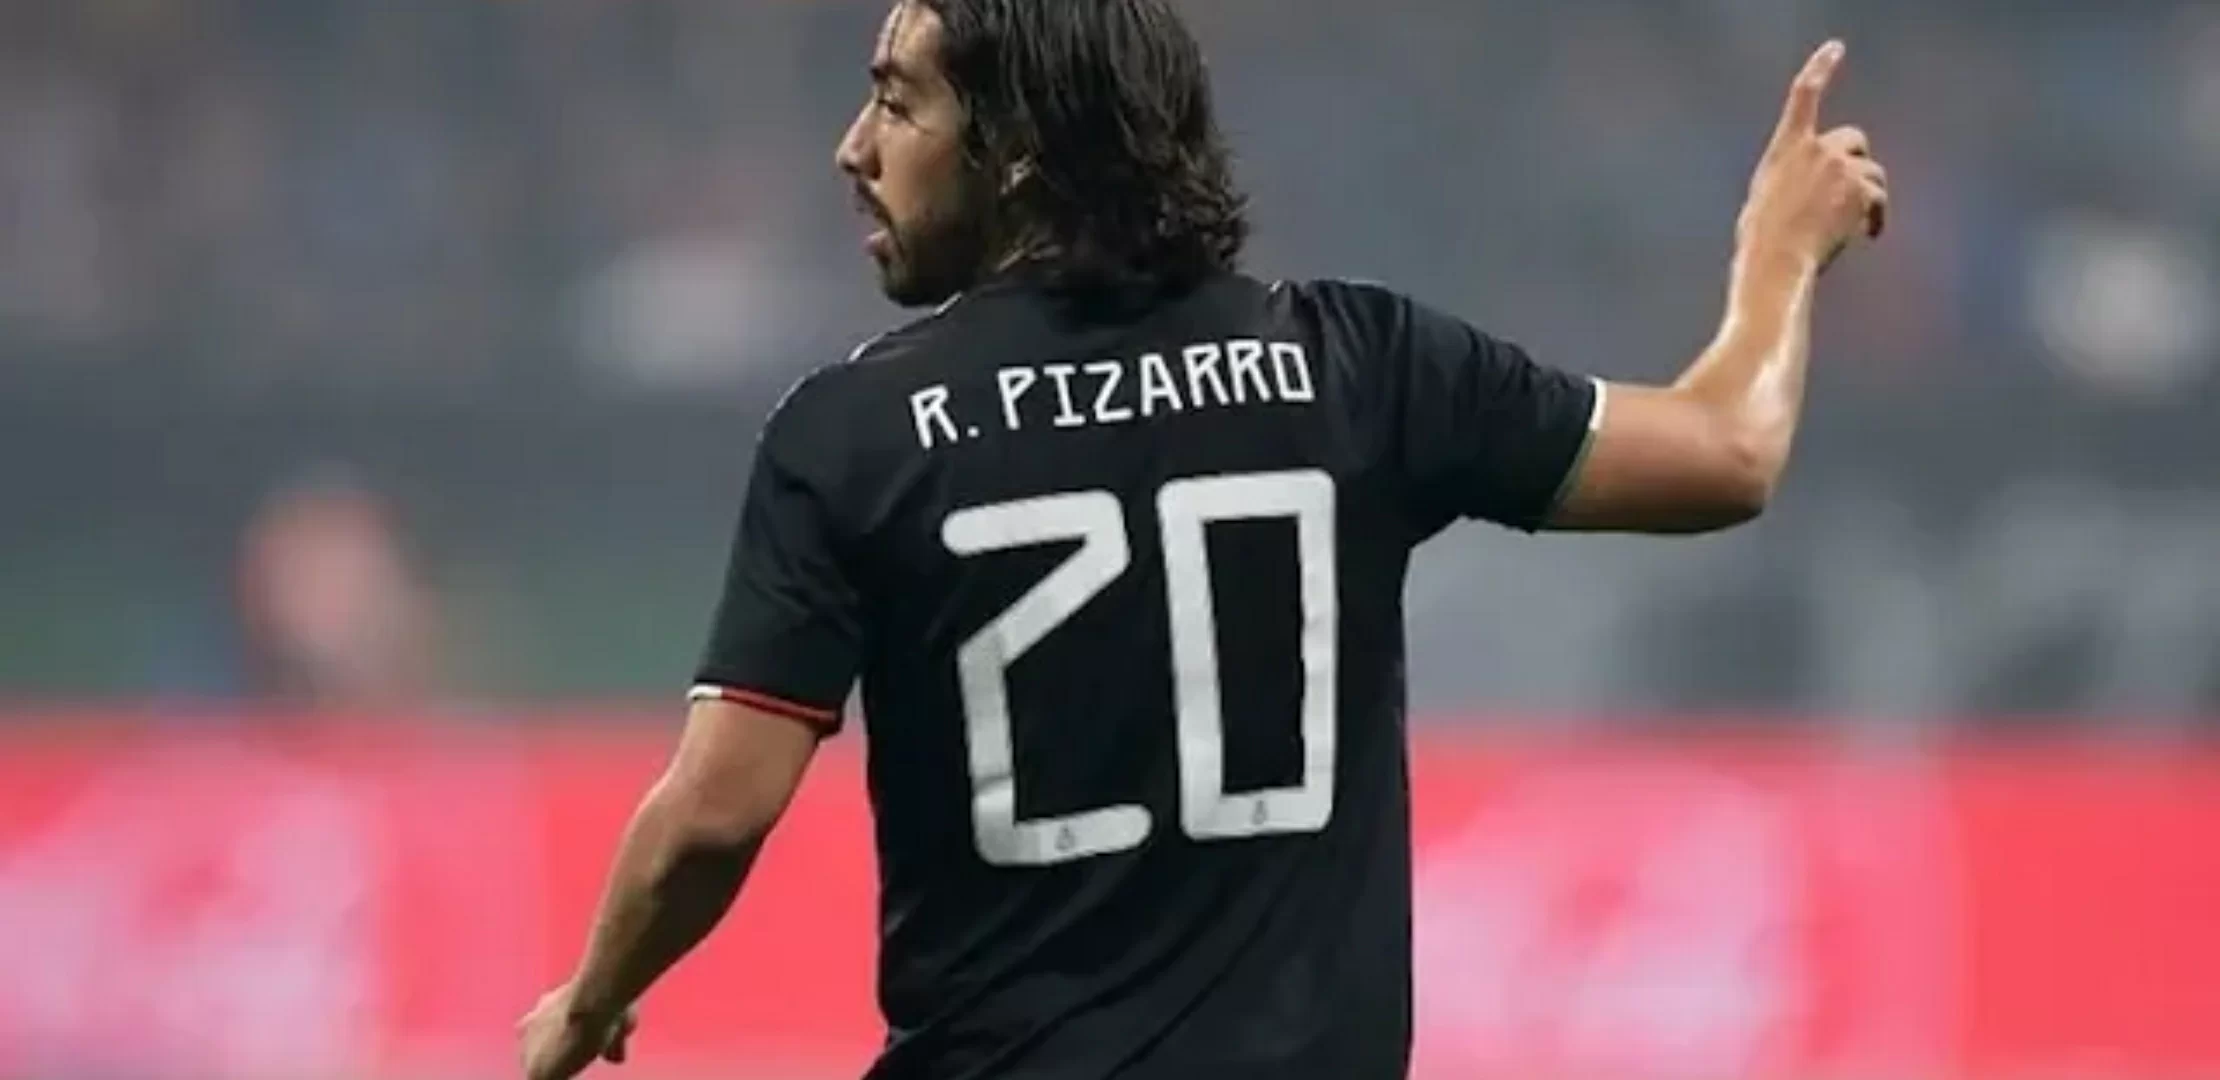 Calciomercato Milan – Obiettivo Pizarro, ecco chi è